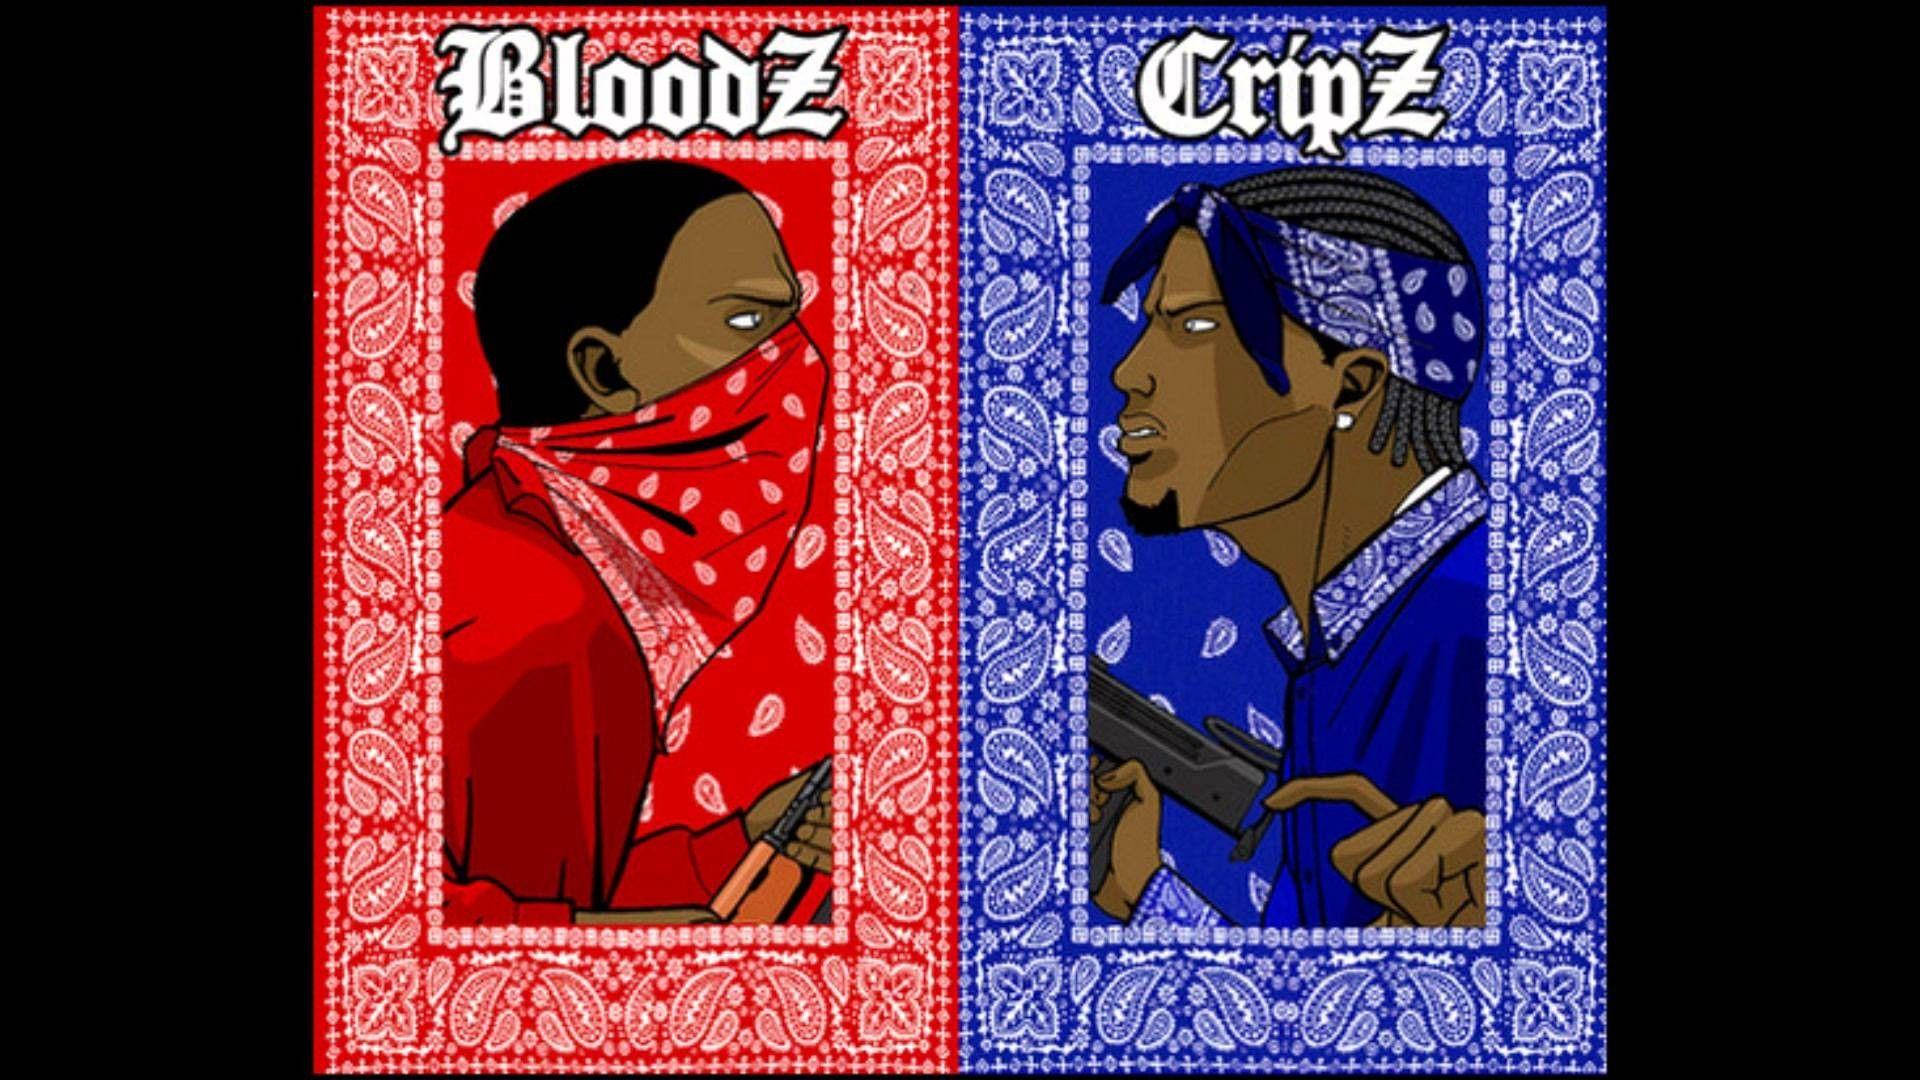 Crip And Bloodz Rival Gang Wallpaper